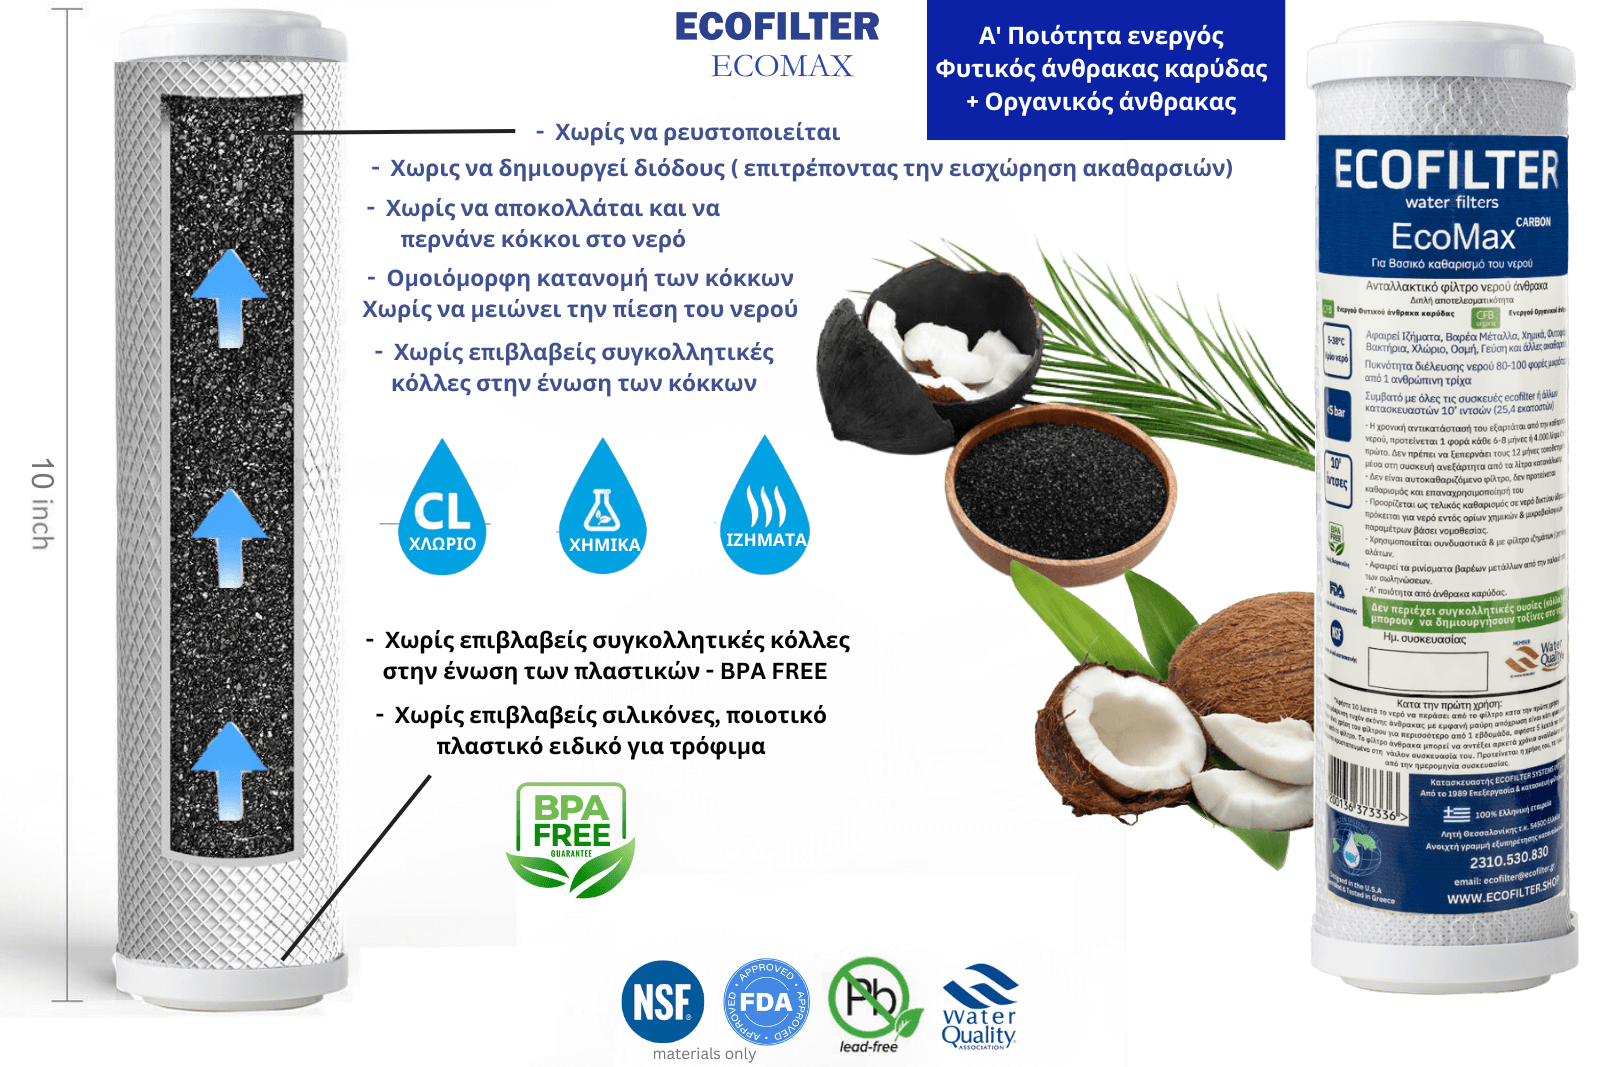 ecofilter water filter